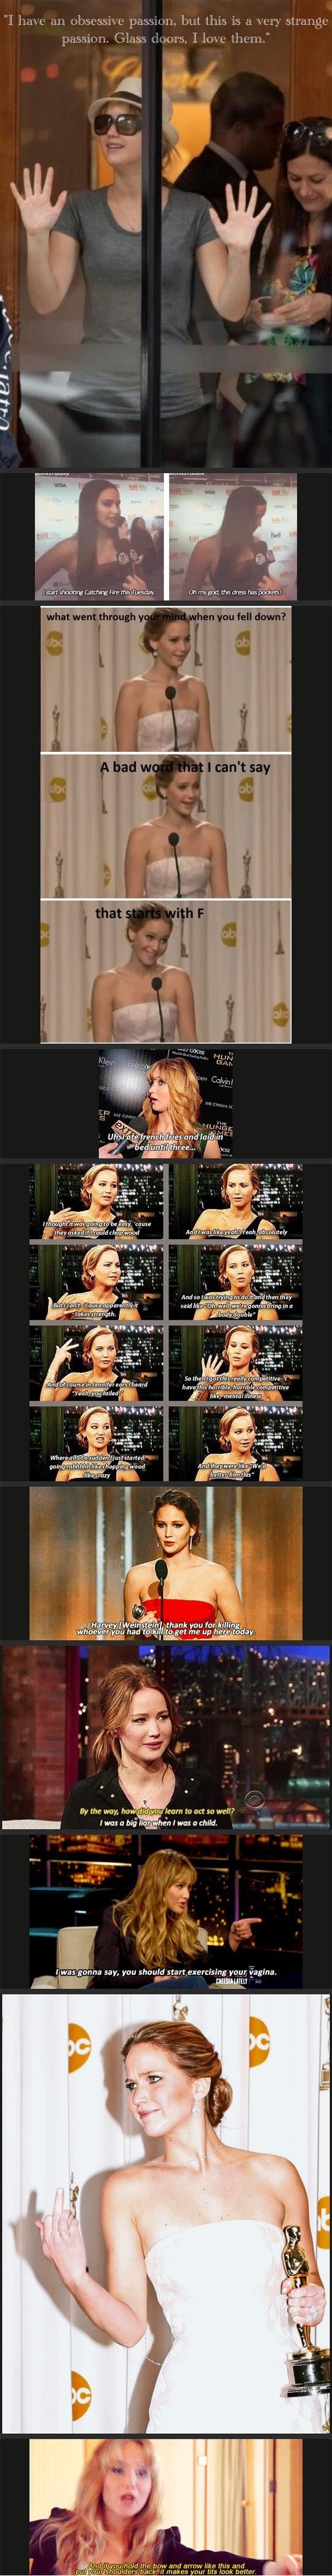 Oh Jennifer..